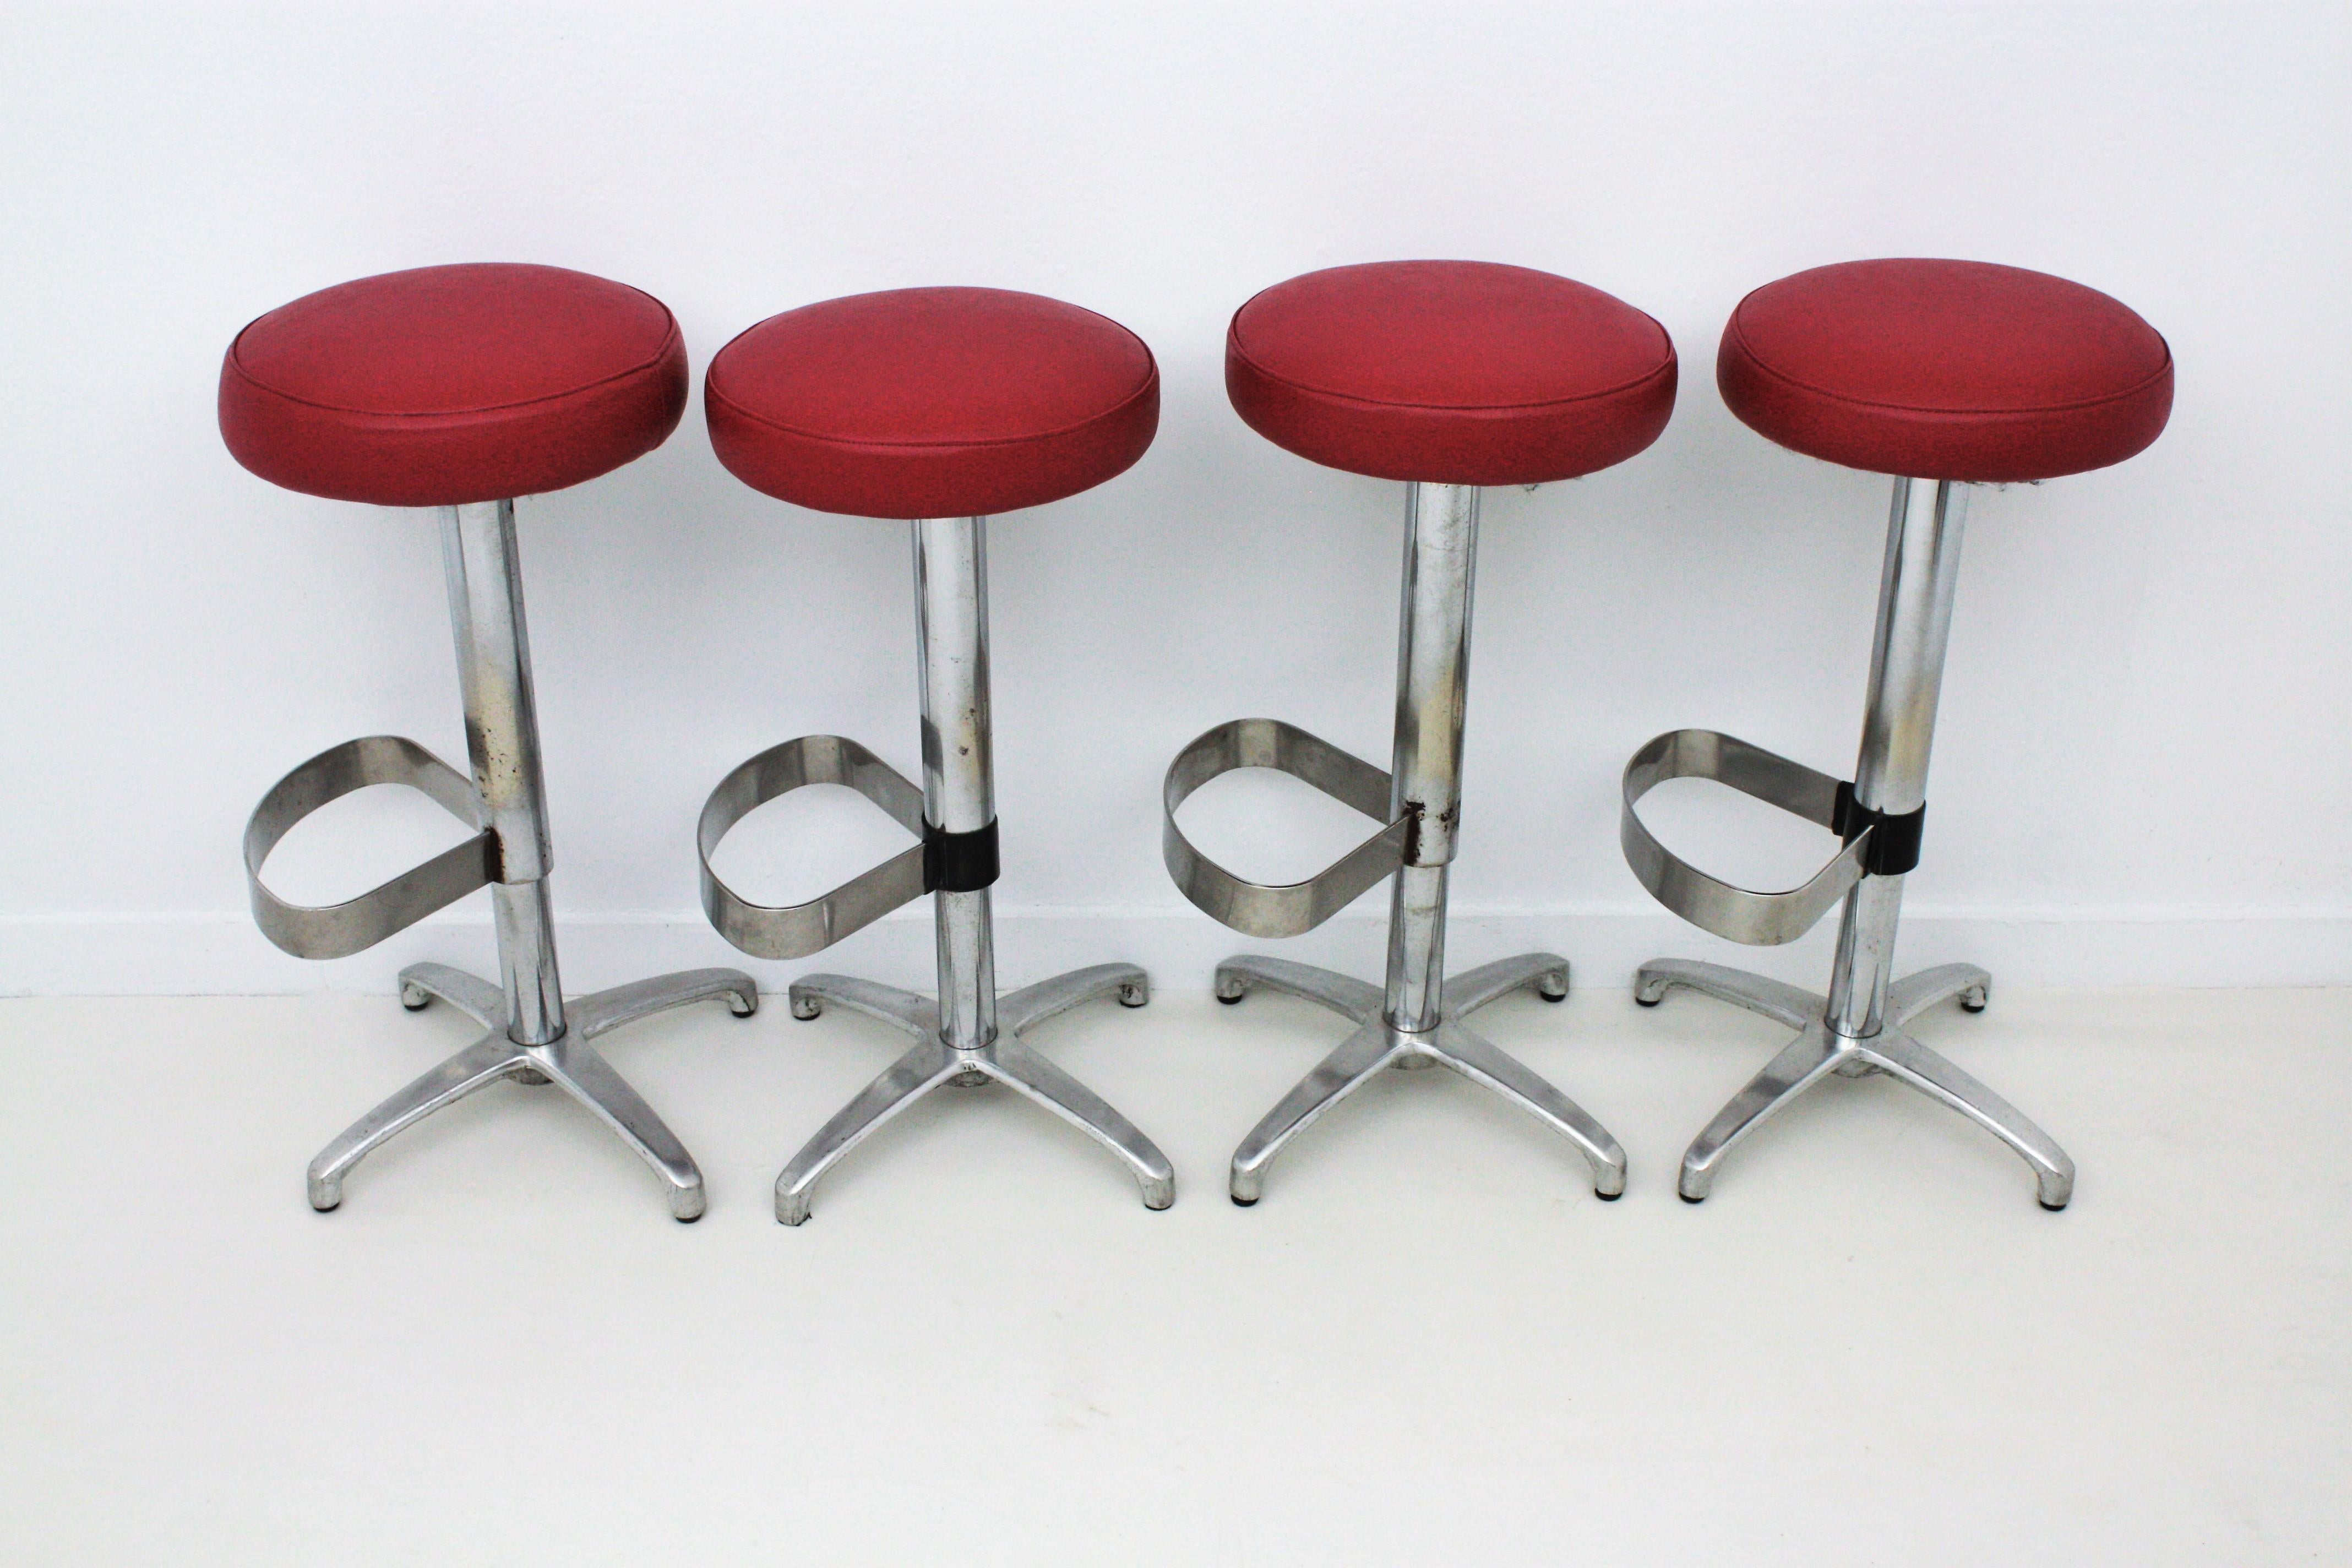 Ensemble de quatre tabourets de bar pivotants en métal et sièges en similicuir rouge, Espagne, années 1970.
Ces tabourets de bar hauts très confortables ont une structure en acier chromé avec un repose-pieds en forme de boucle reposant sur une base